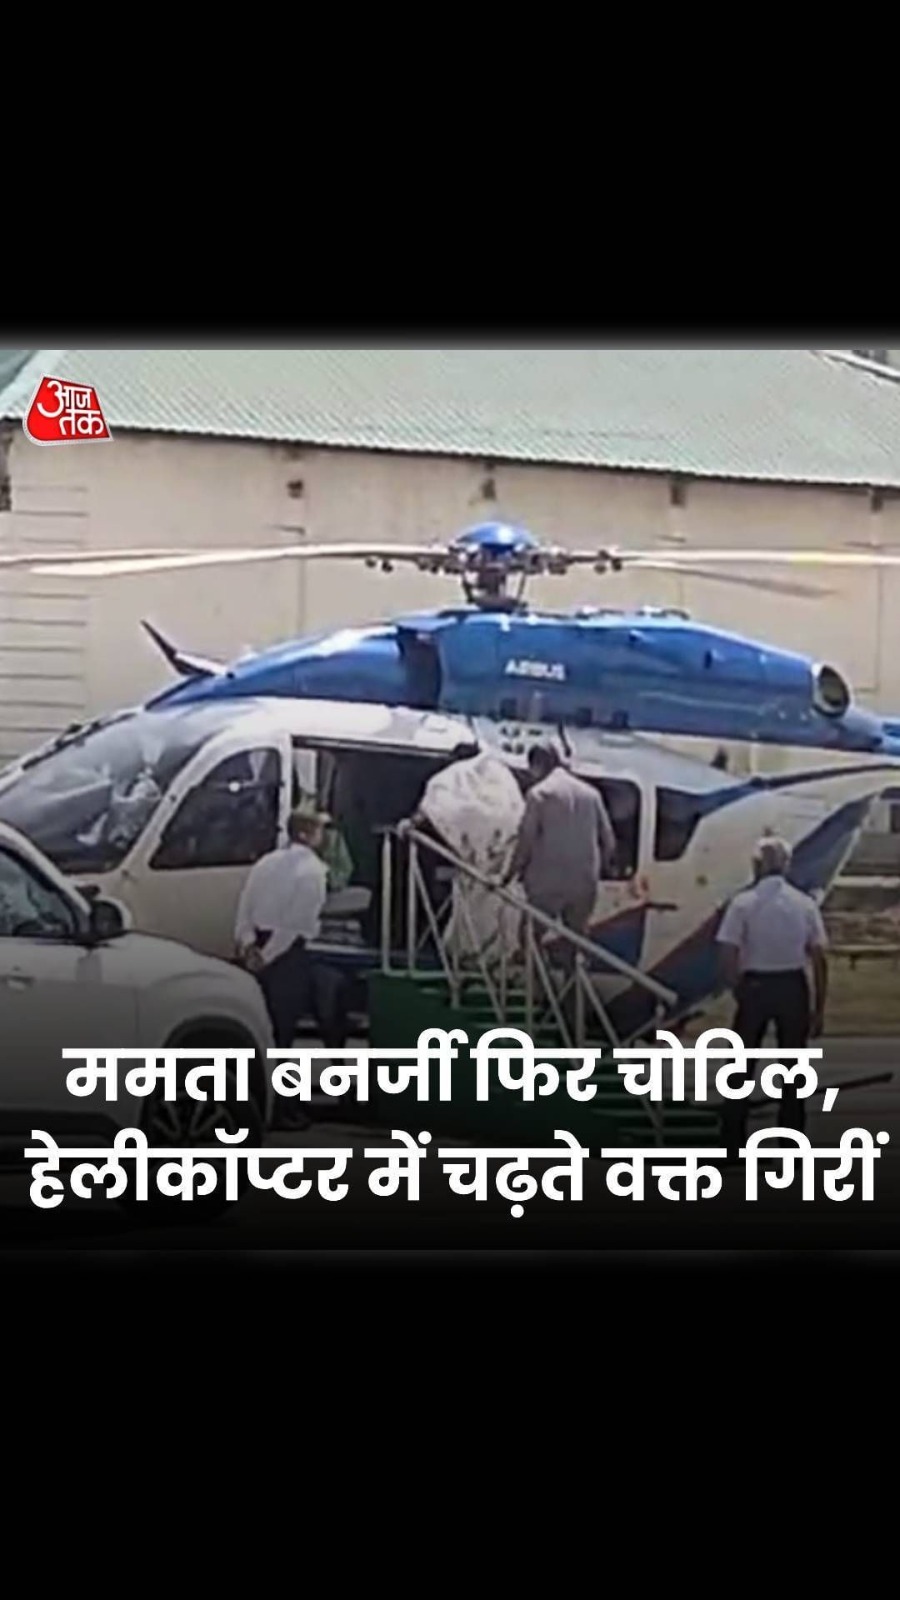 पश्चिम बंगाल: दुर्गापुर में हेलीकॉप्टर के अंदर गिरीं ममता बनर्जी, चढ़ने के दौरान लगी चोट